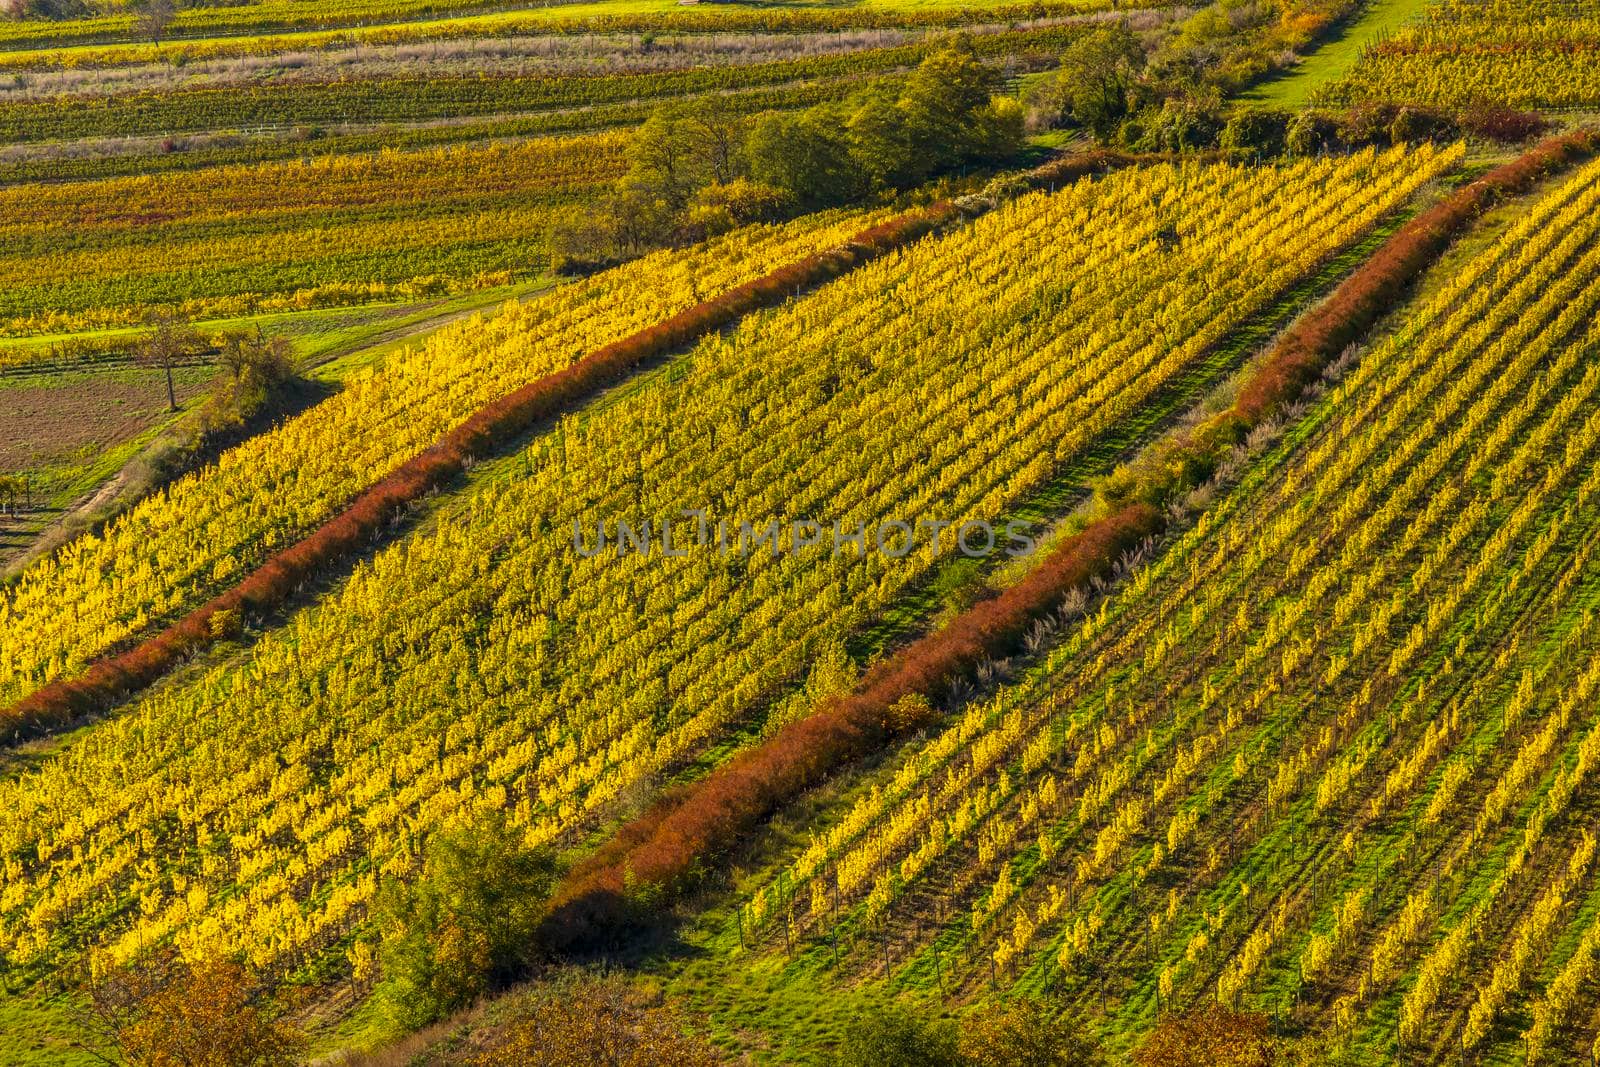 Vineyards under Palava, Southern Moravia, Czech Republic by phbcz